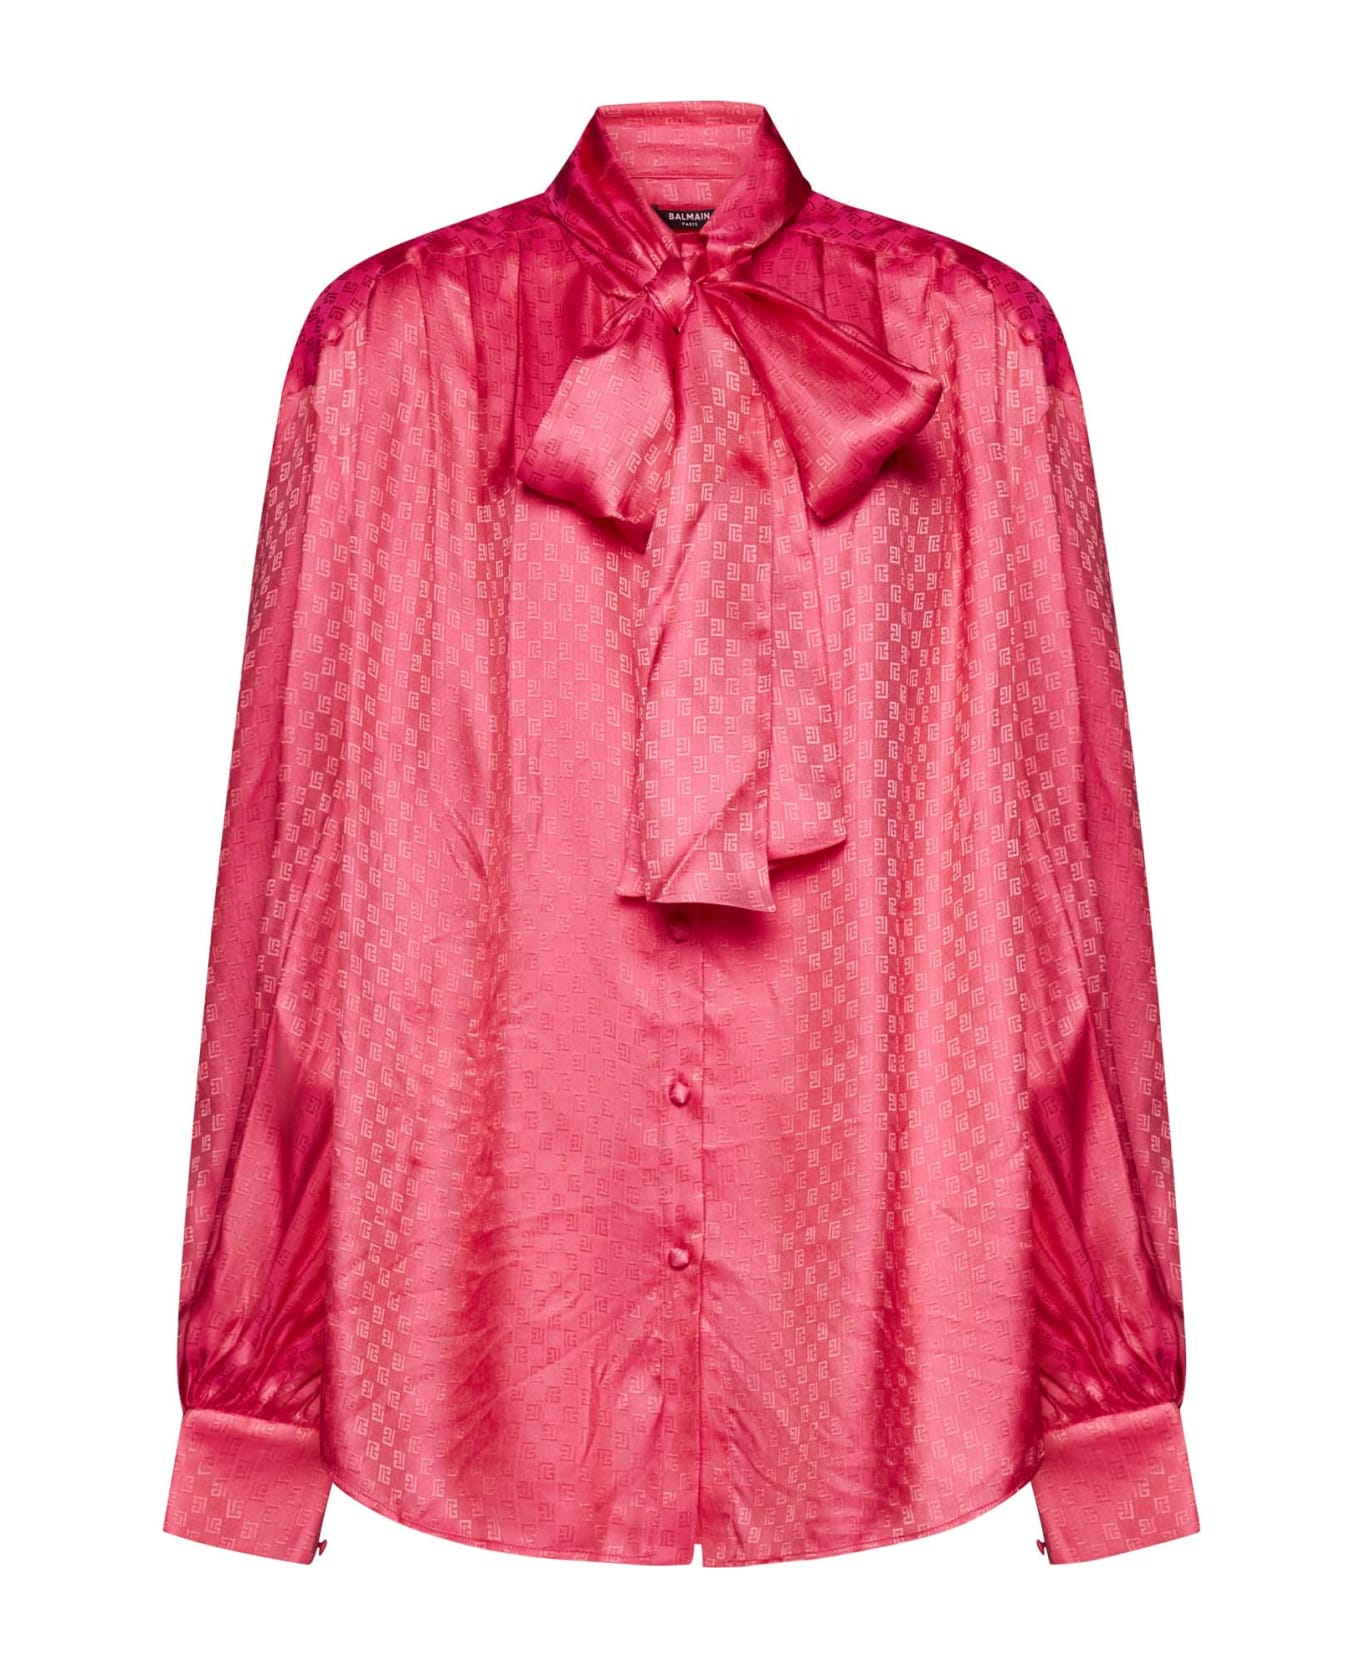 Balmain Silk Shirt - Fuchsia